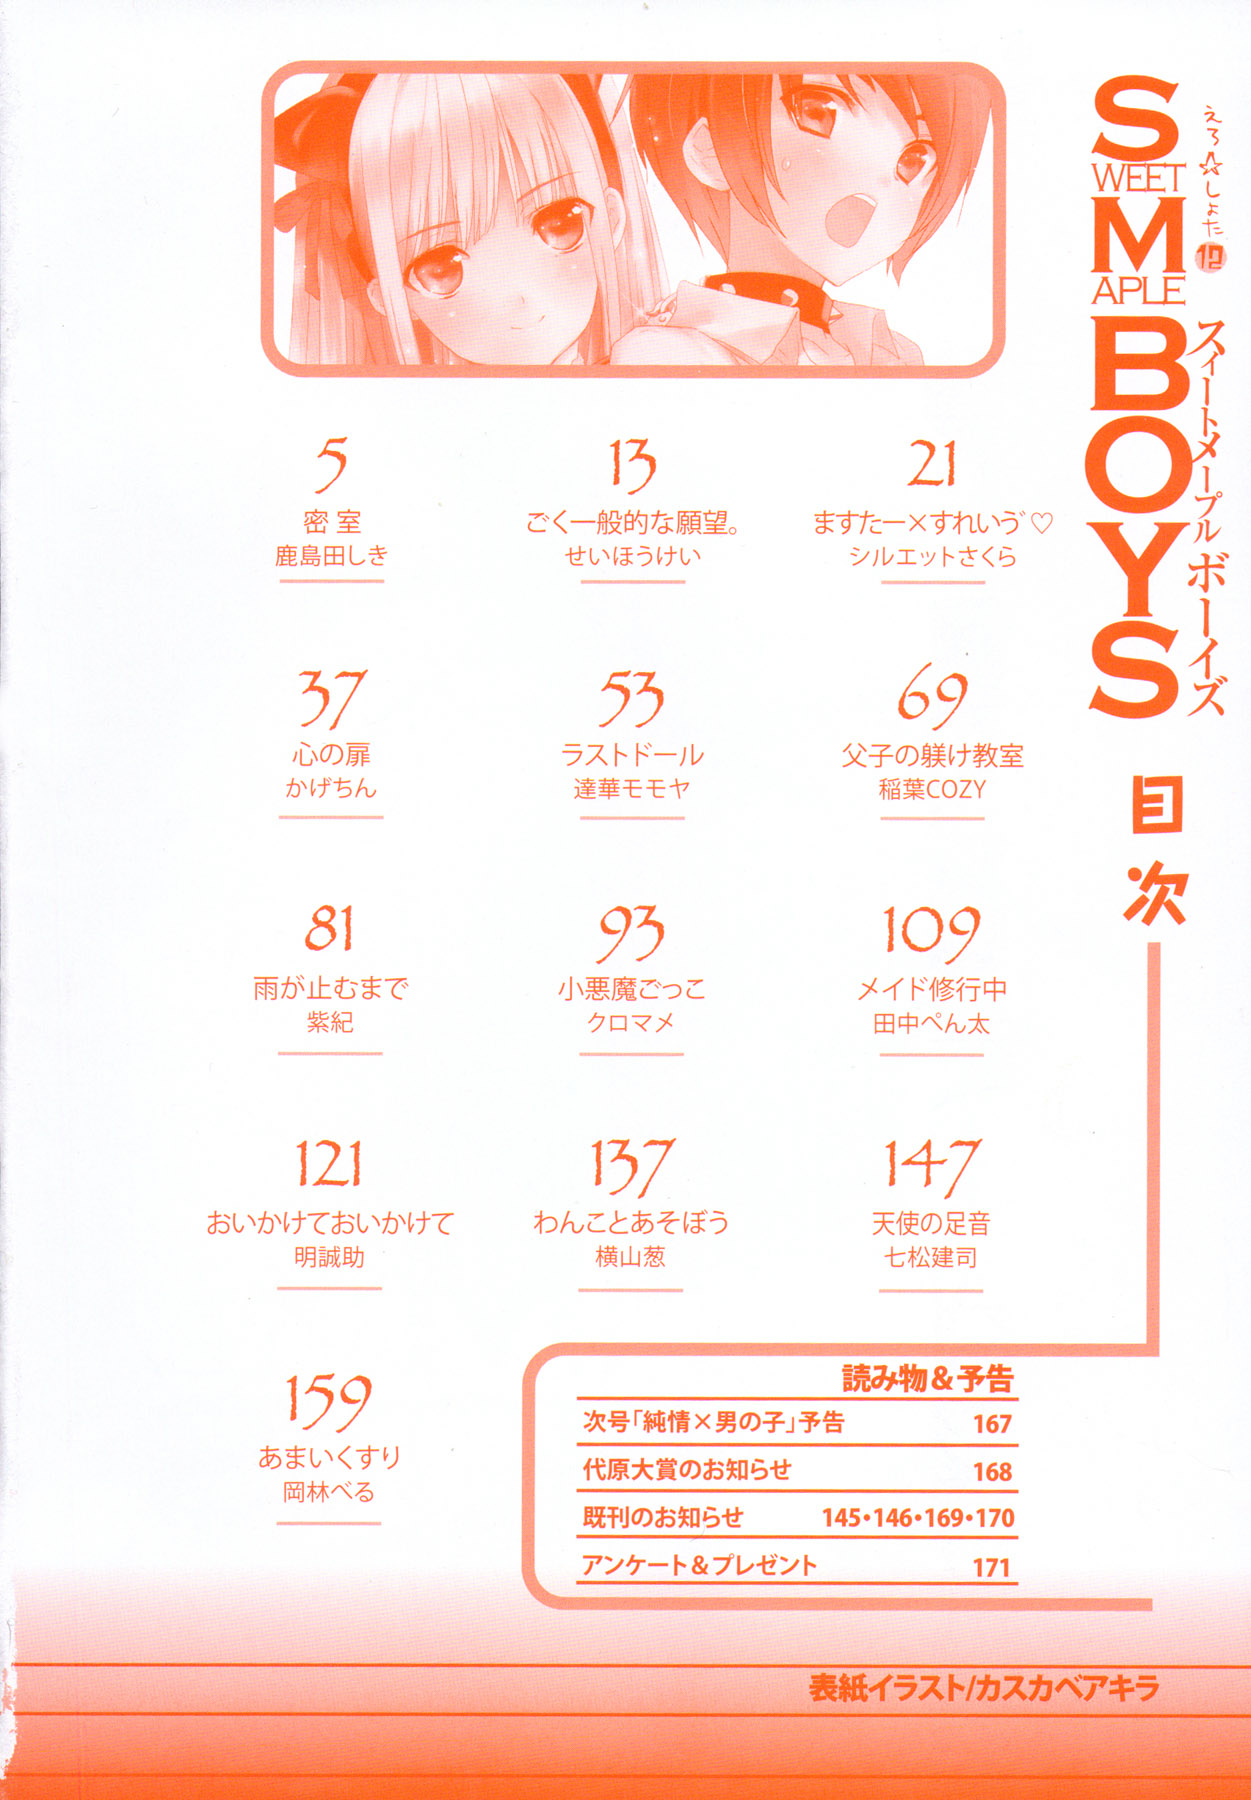 [アンソロジー] えろ☆しょた 12 SWEET MAPLE BOYS